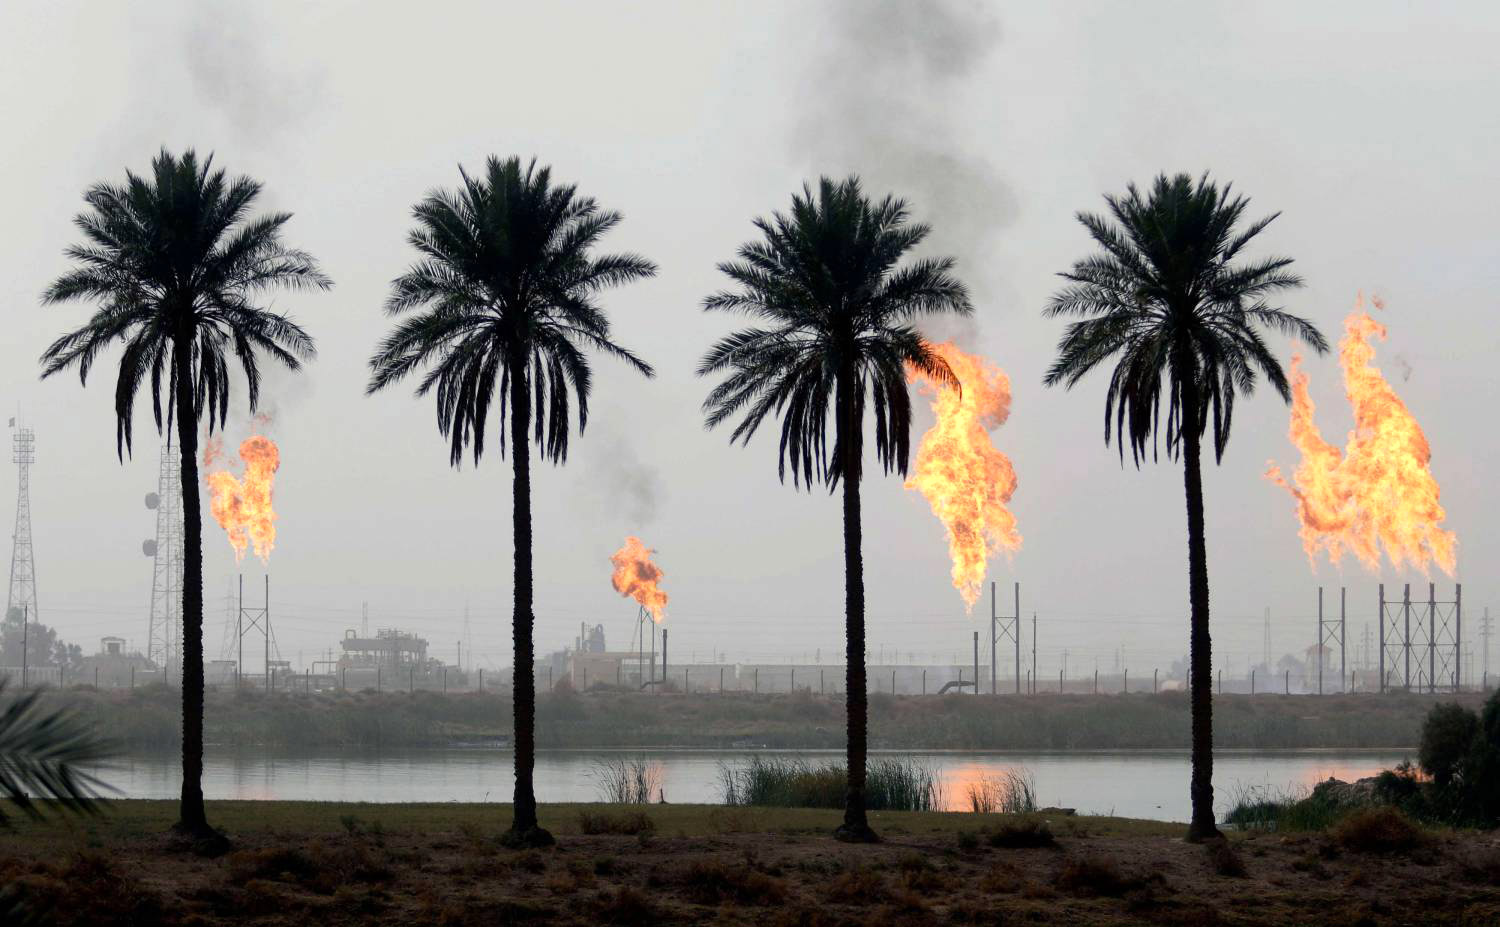 Iraq's weekly crude exports to US climbed last week, EIA says